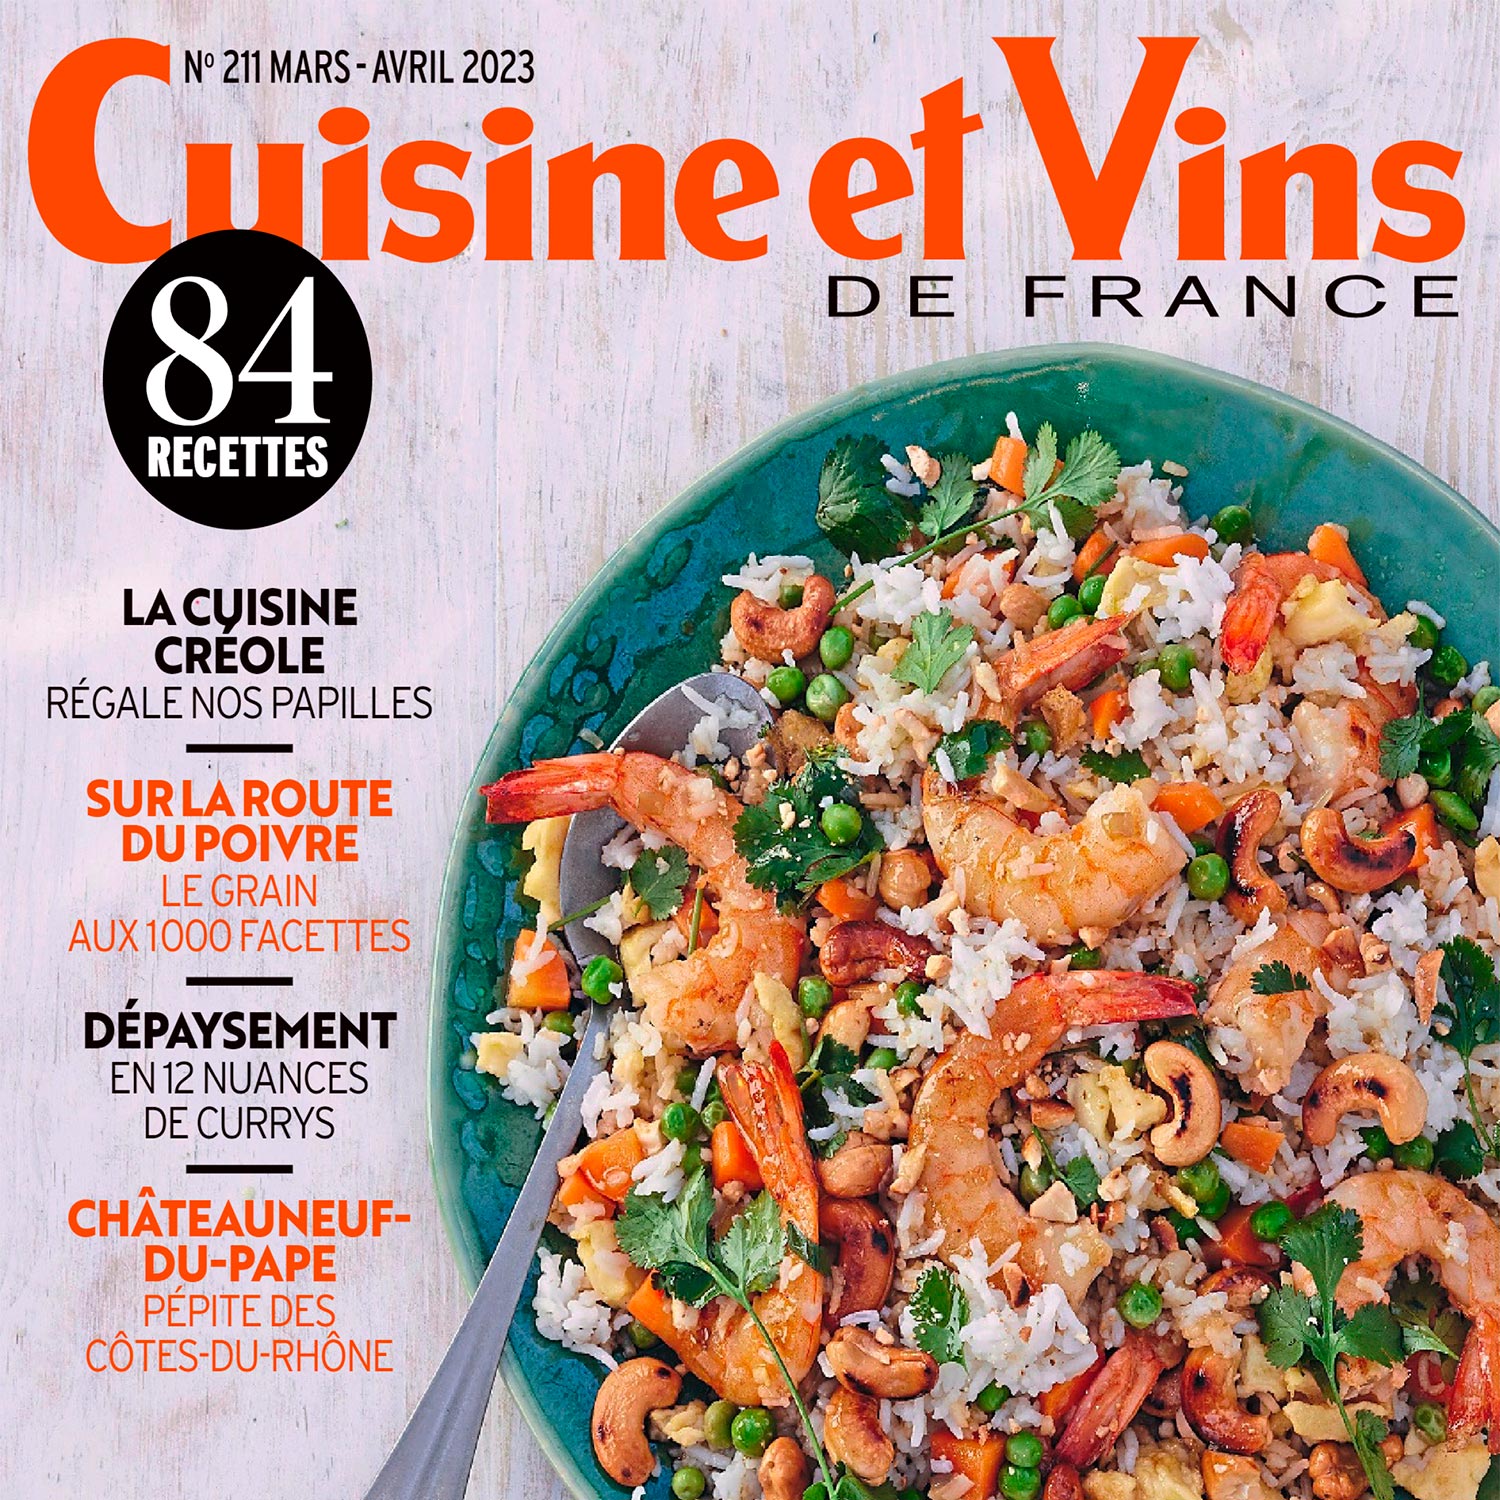 Cuisine et vins de france magazine